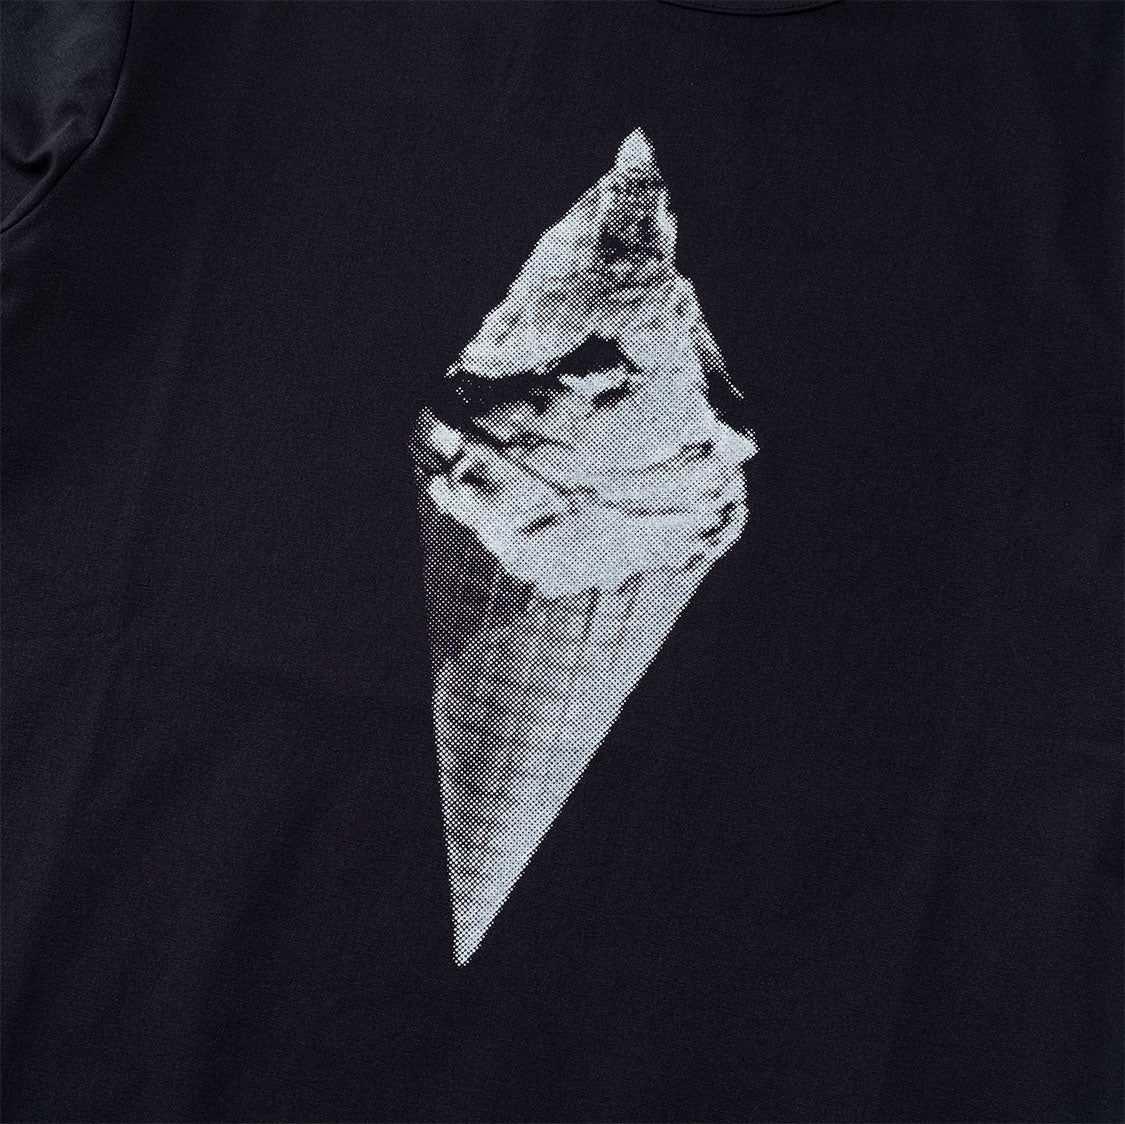 アンサーフォー / Tシャツ アイスクリーム01(Black)